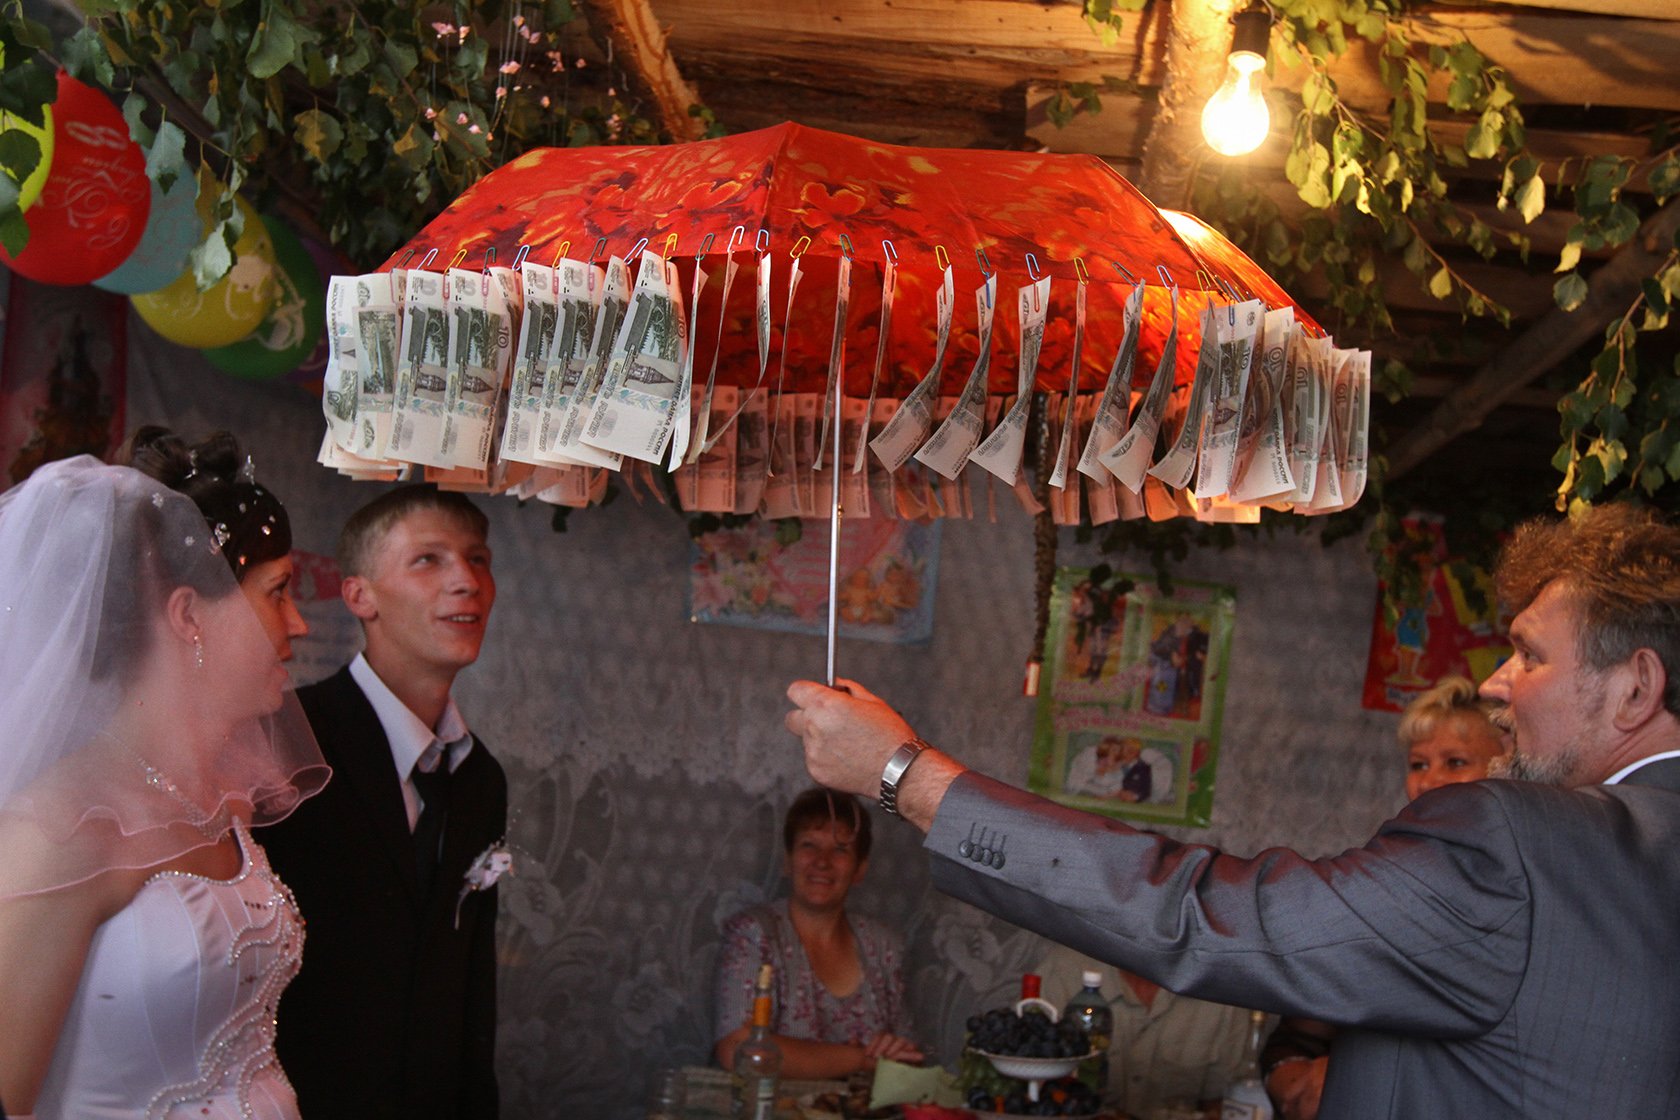 Приехав на свадьбу раньше на час. Денежный зонт на свадьбу. Зонтик с деньгами на свадьбу. Деревенская свадьба. Подарок на свадьбу денежный зонт.